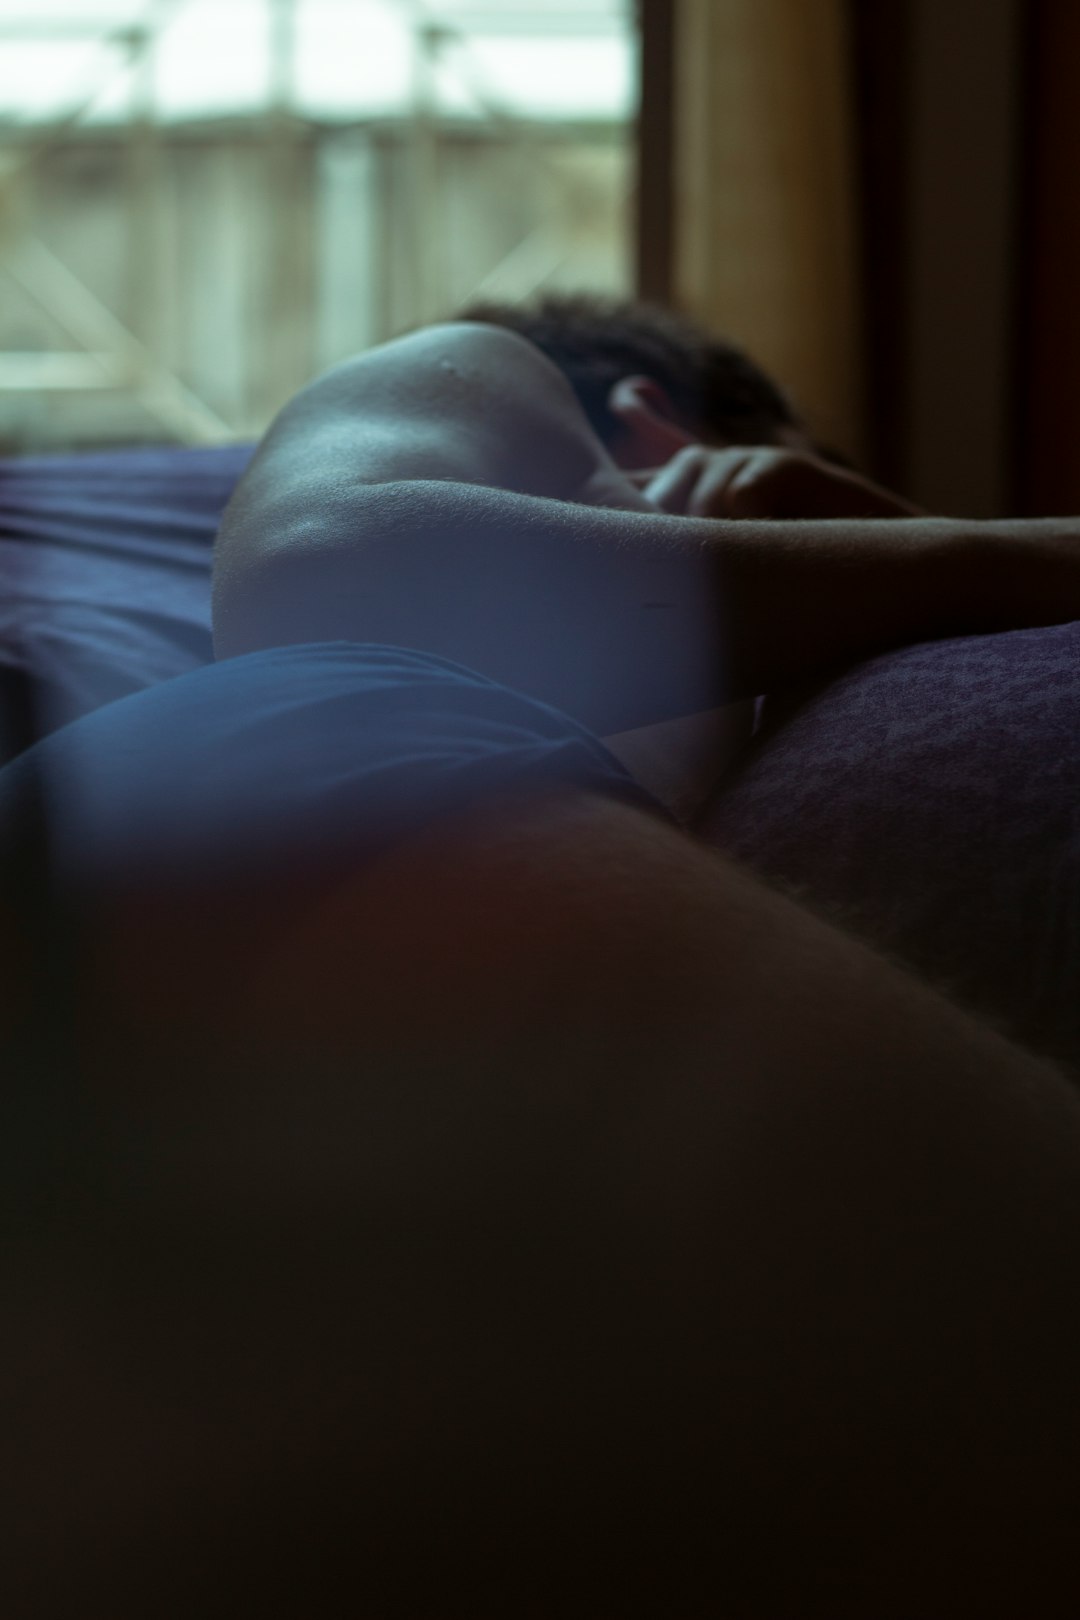 woman lying on bed near window